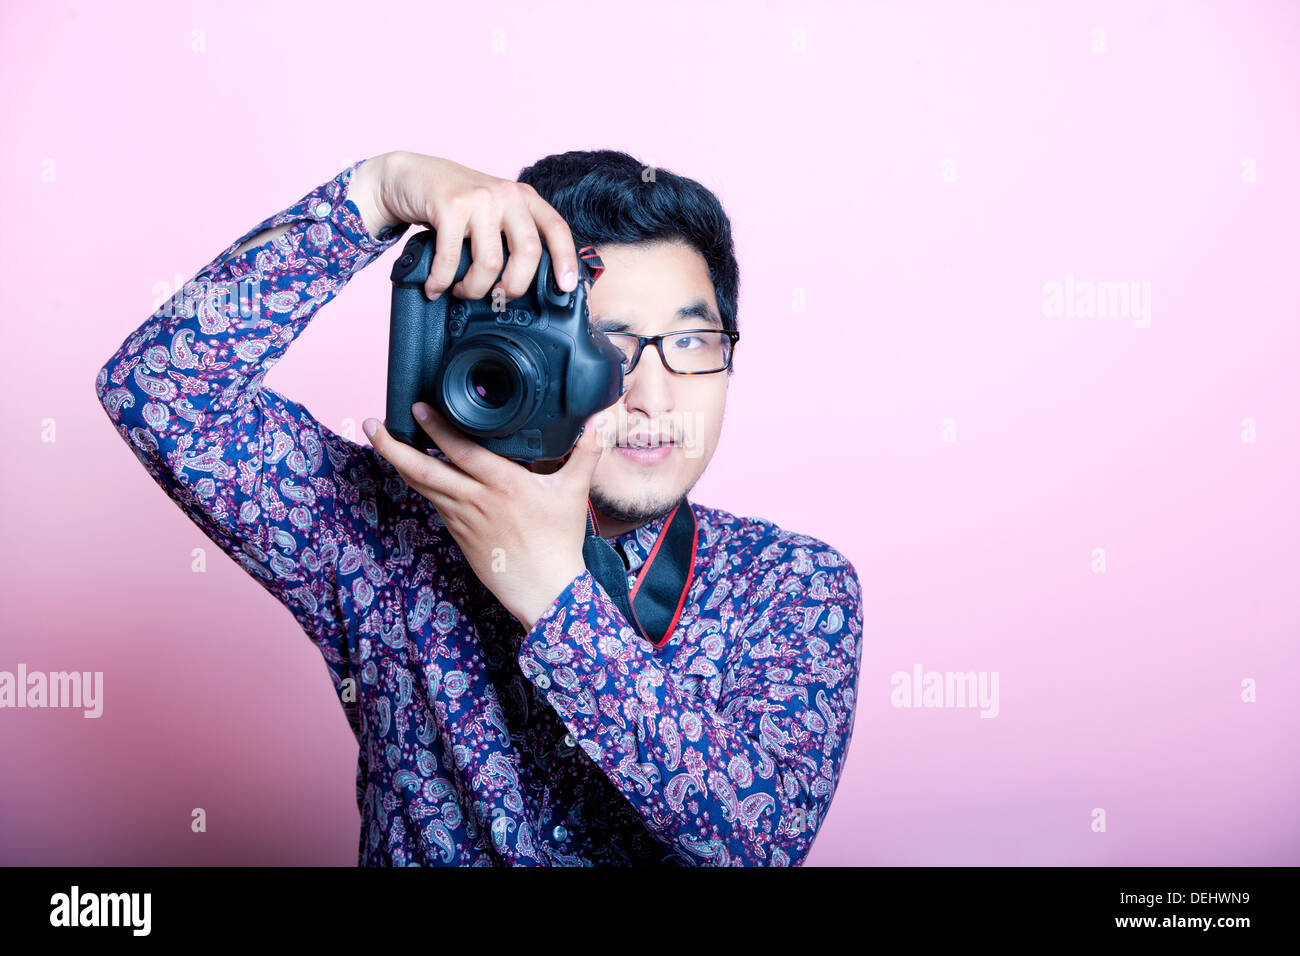 Photographe asiatique créative Banque D'Images